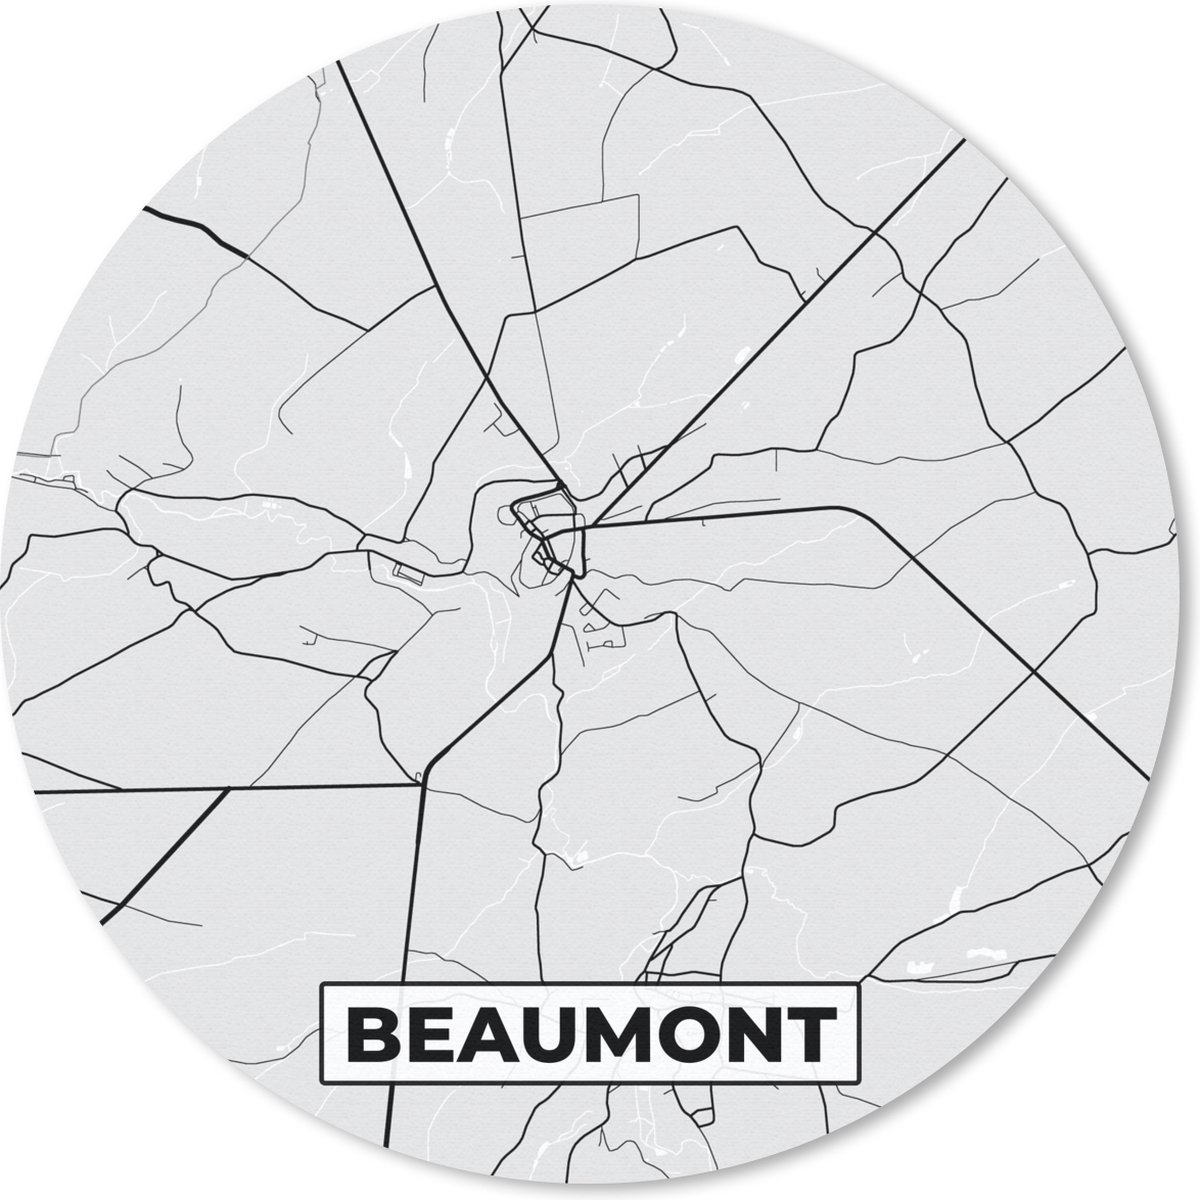 Muismat - Mousepad - Rond - Stadskaart – Plattegrond – België – Zwart Wit – Beaumont – Kaart - 30x30 cm - Ronde muismat